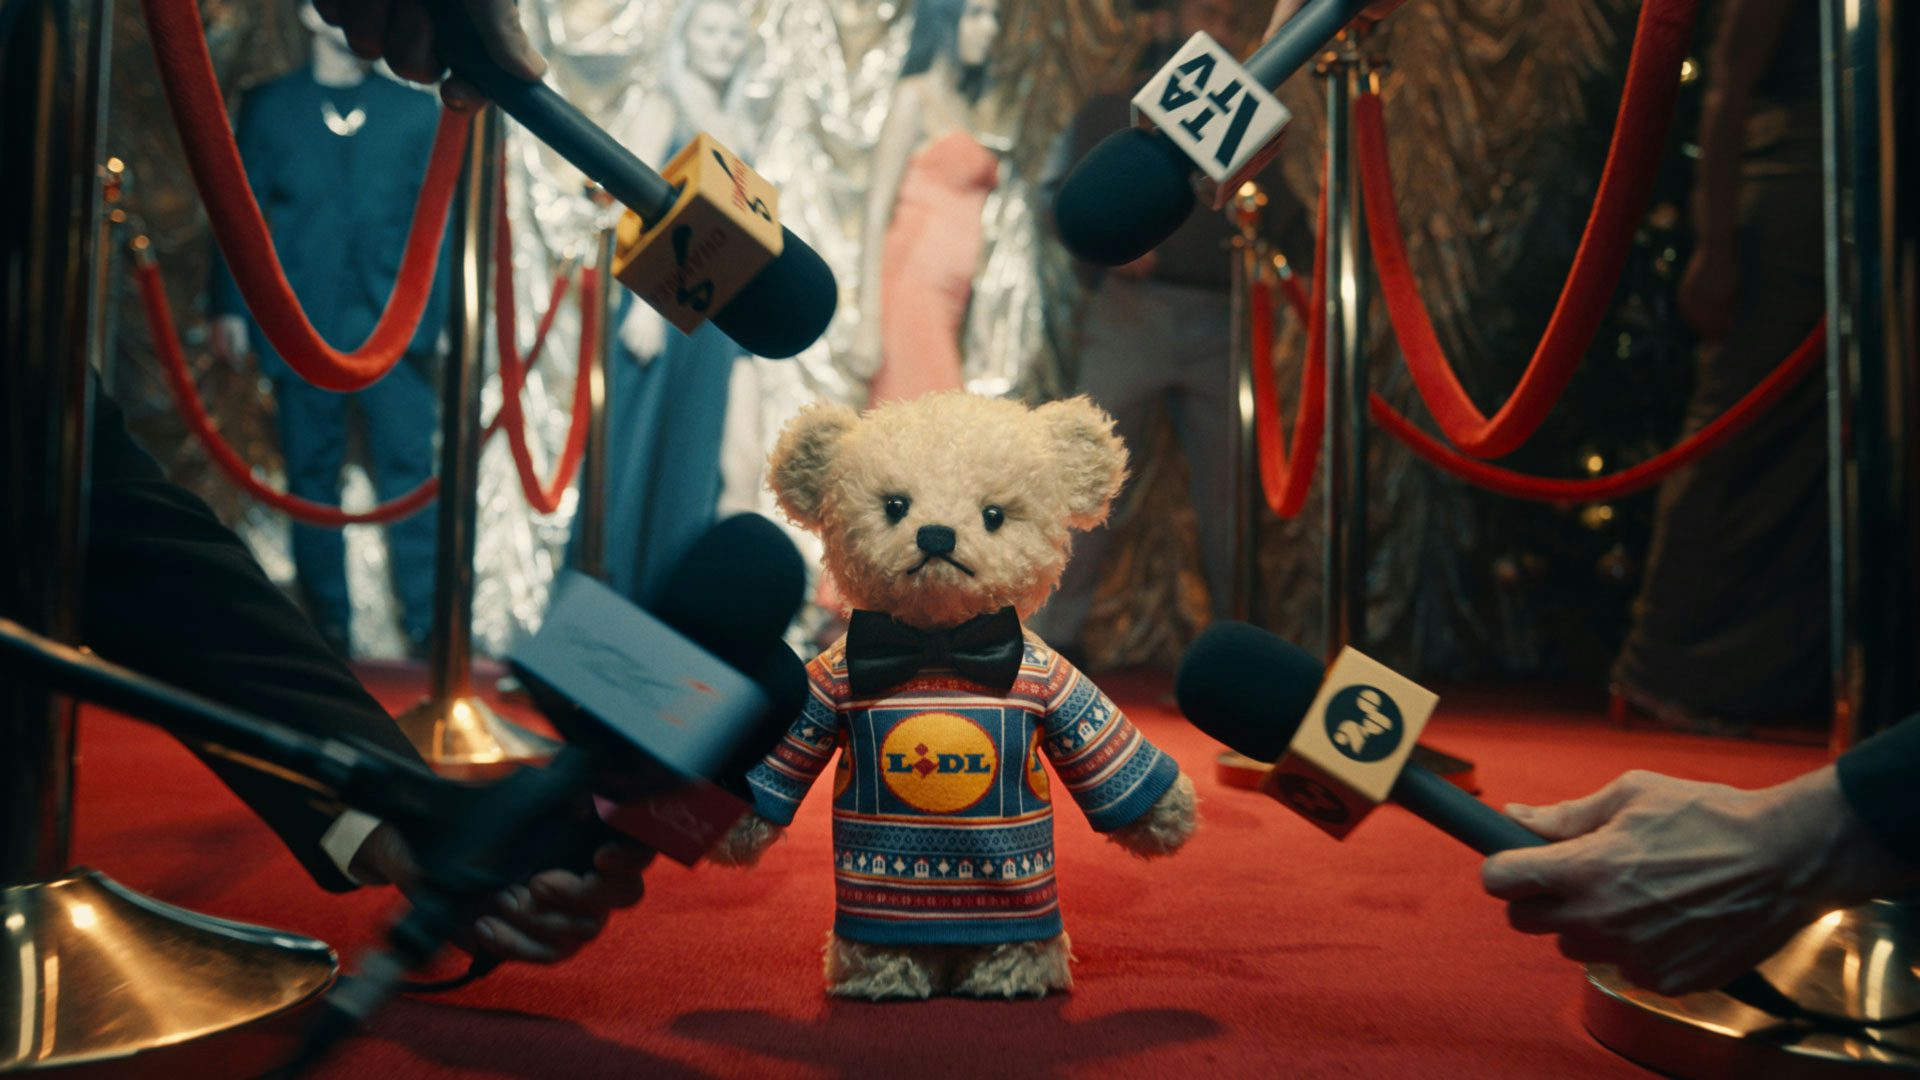 Lidl’s festive ad stars a deadpan teddy bear